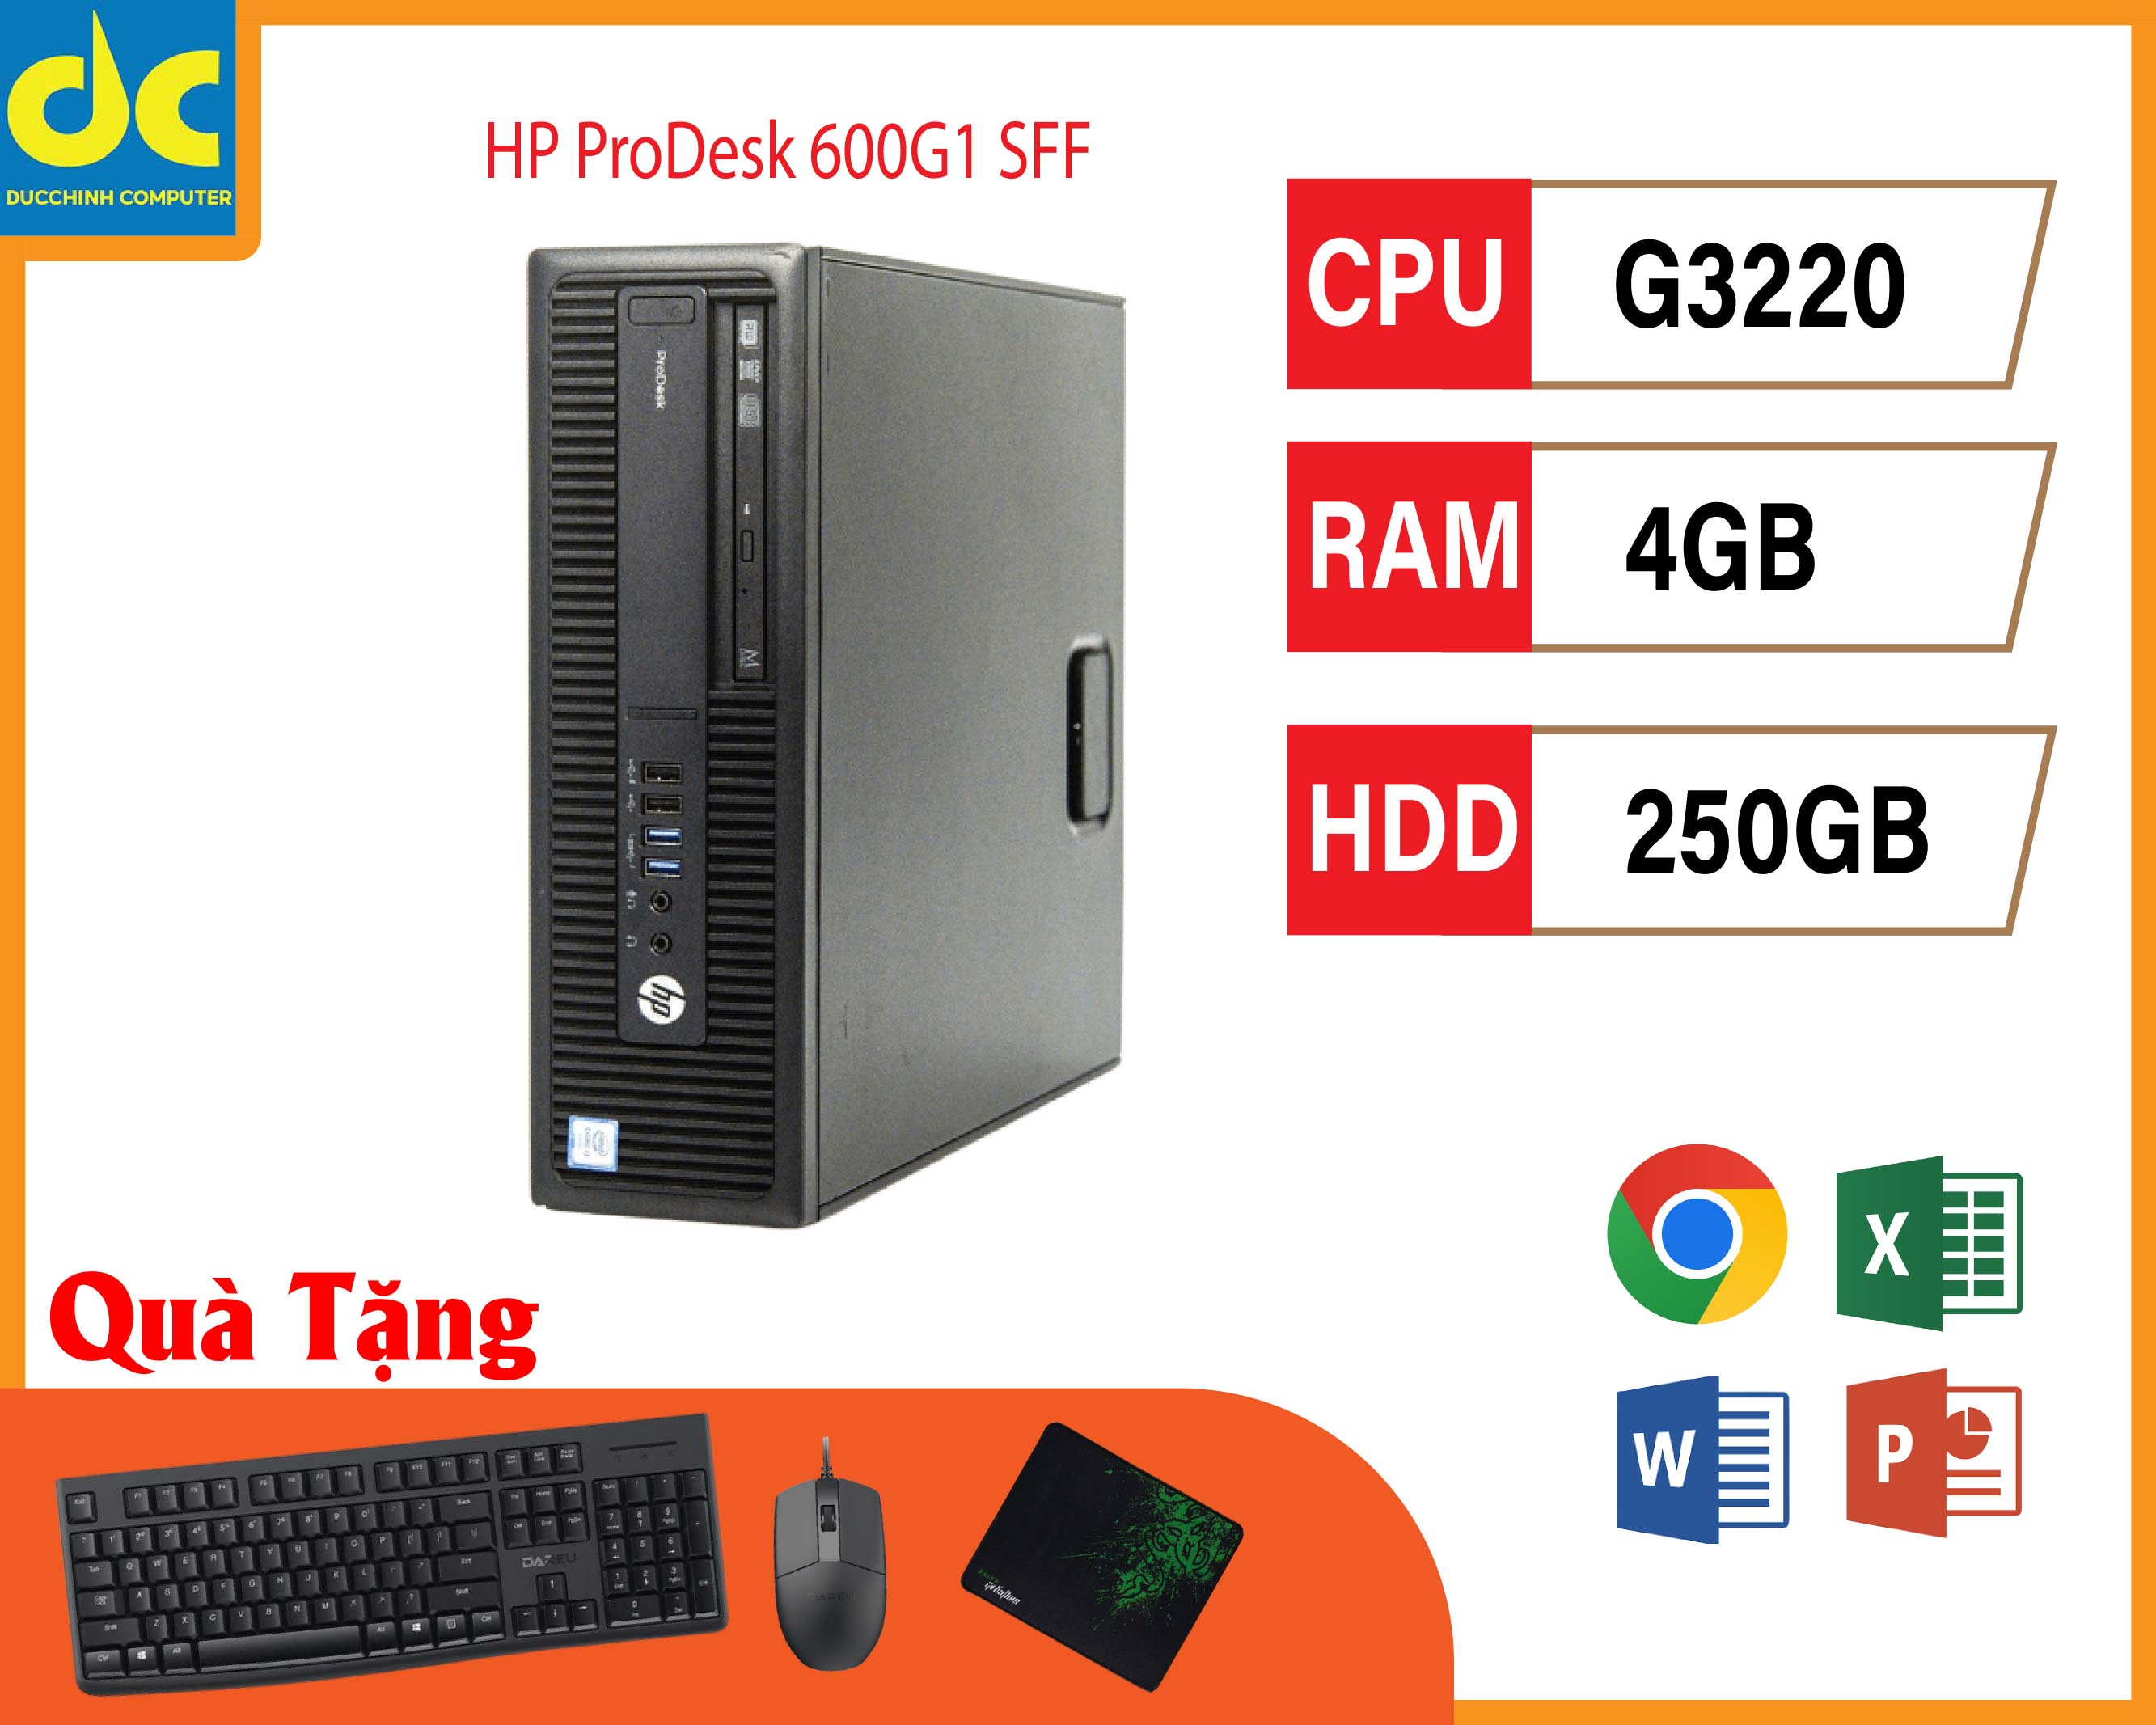 Máy Tính Đồng Bộ HP ProDesk 600 G1 SFF Pentium G3220, Ram 4GB, HDD 250GB giá rẻ cho văn phòng